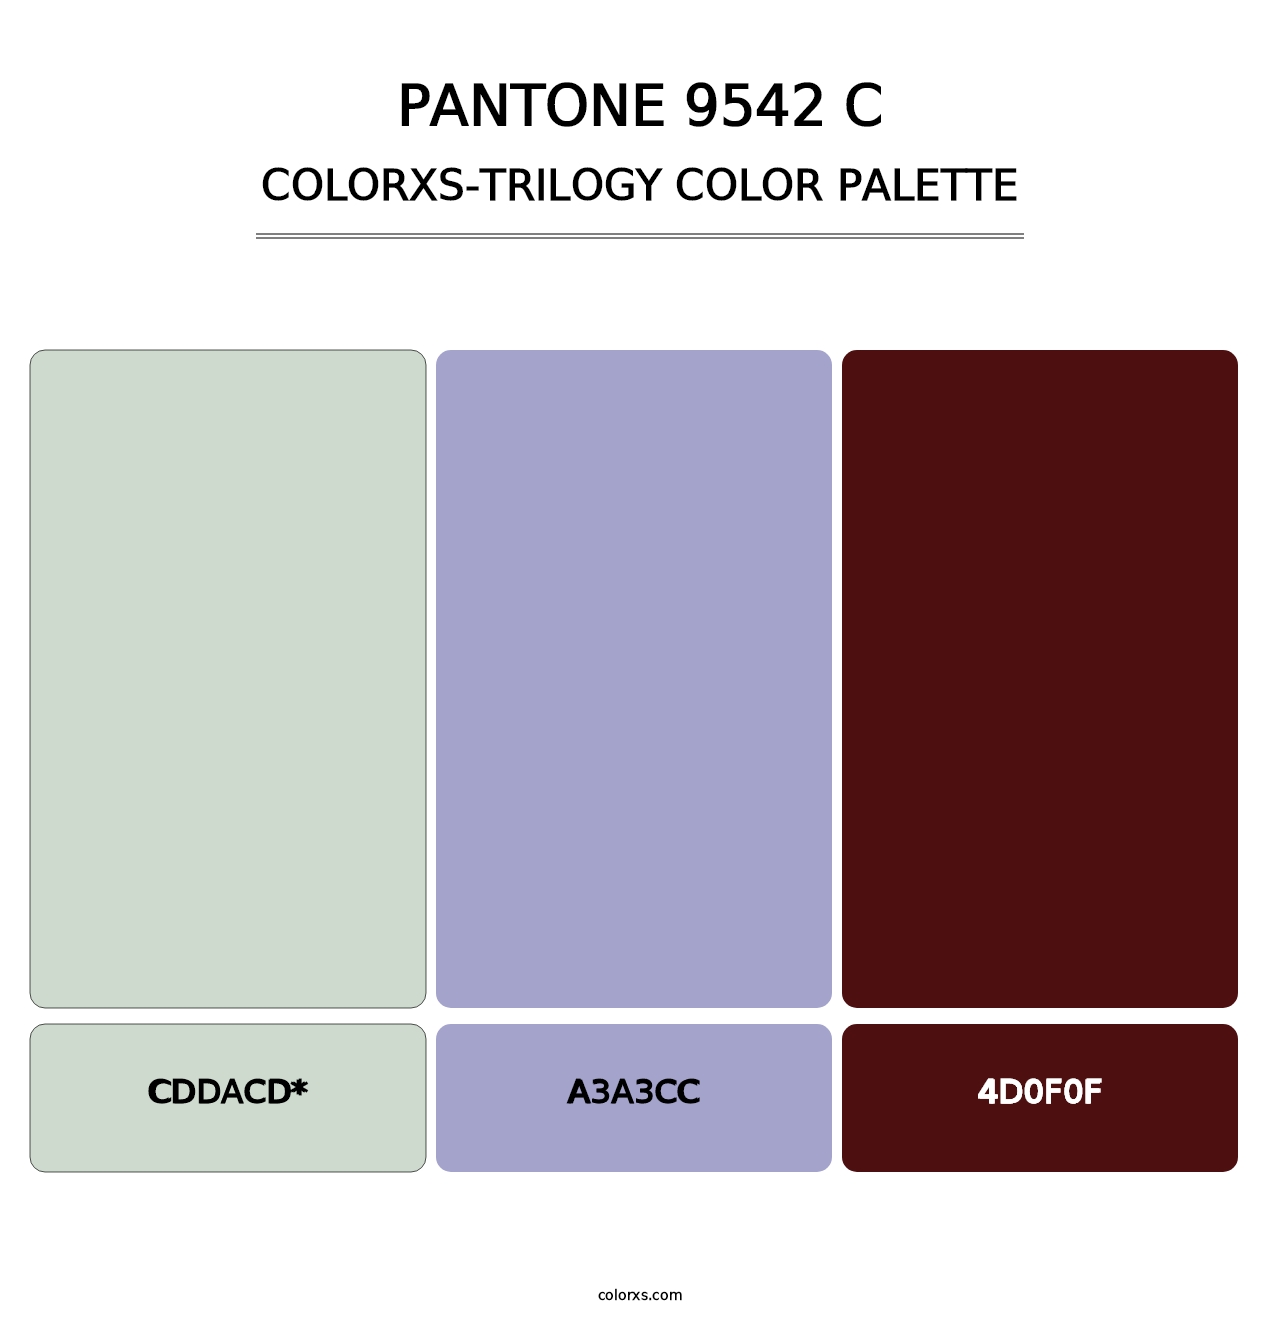 PANTONE 9542 C - Colorxs Trilogy Palette